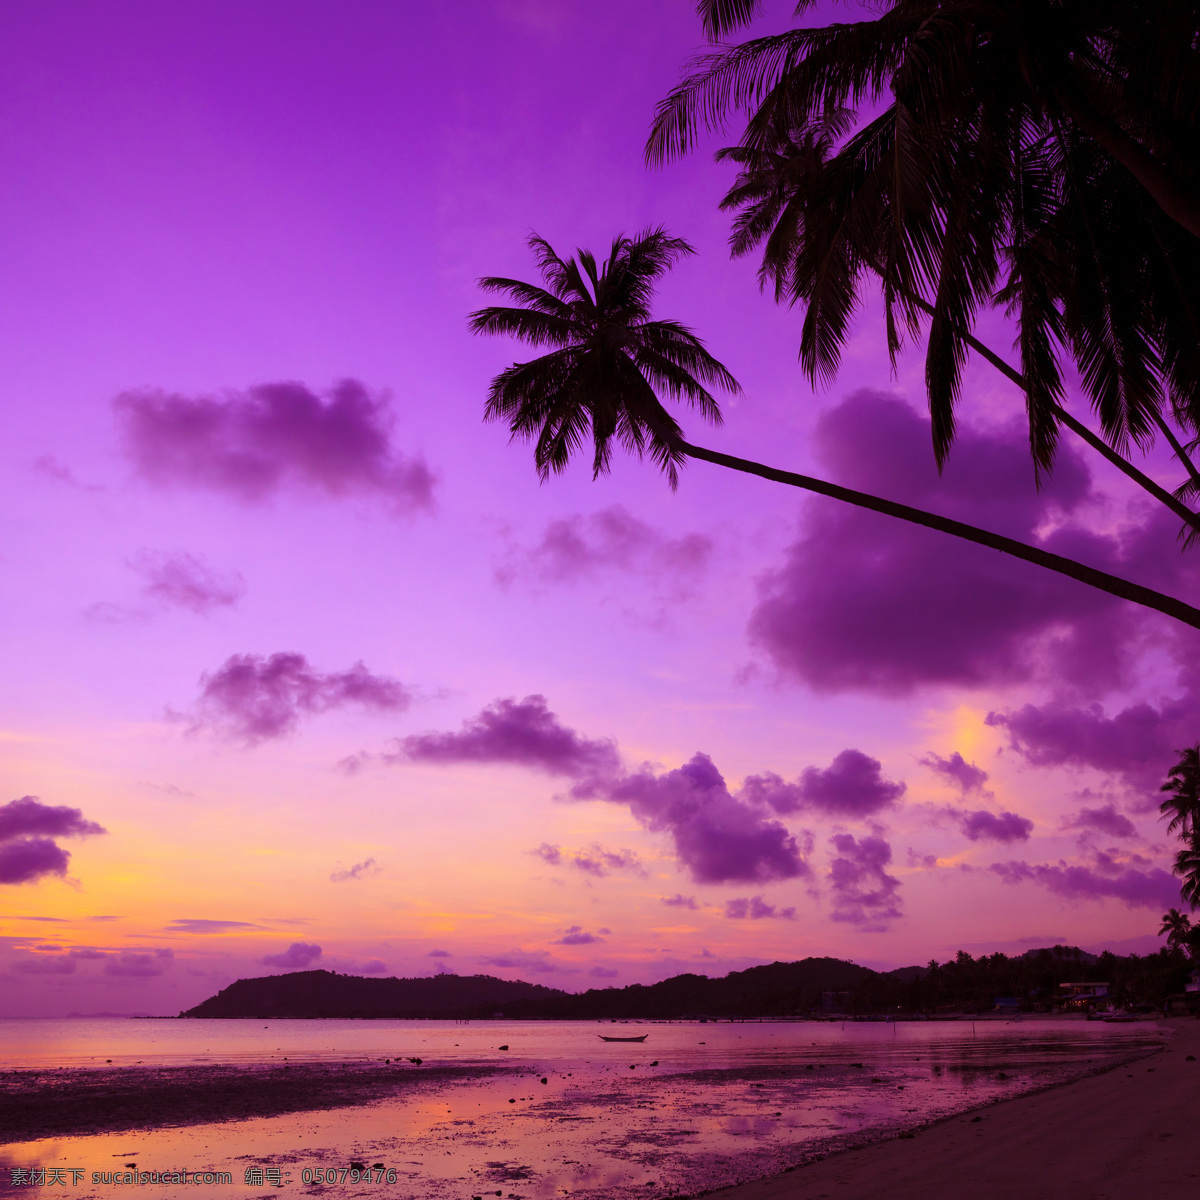 马尔代夫 风景图片 椰子树 海滩 海岛 夕阳 晚霞 黄昏 云彩 国外旅游摄影 自然风景 旅游摄影